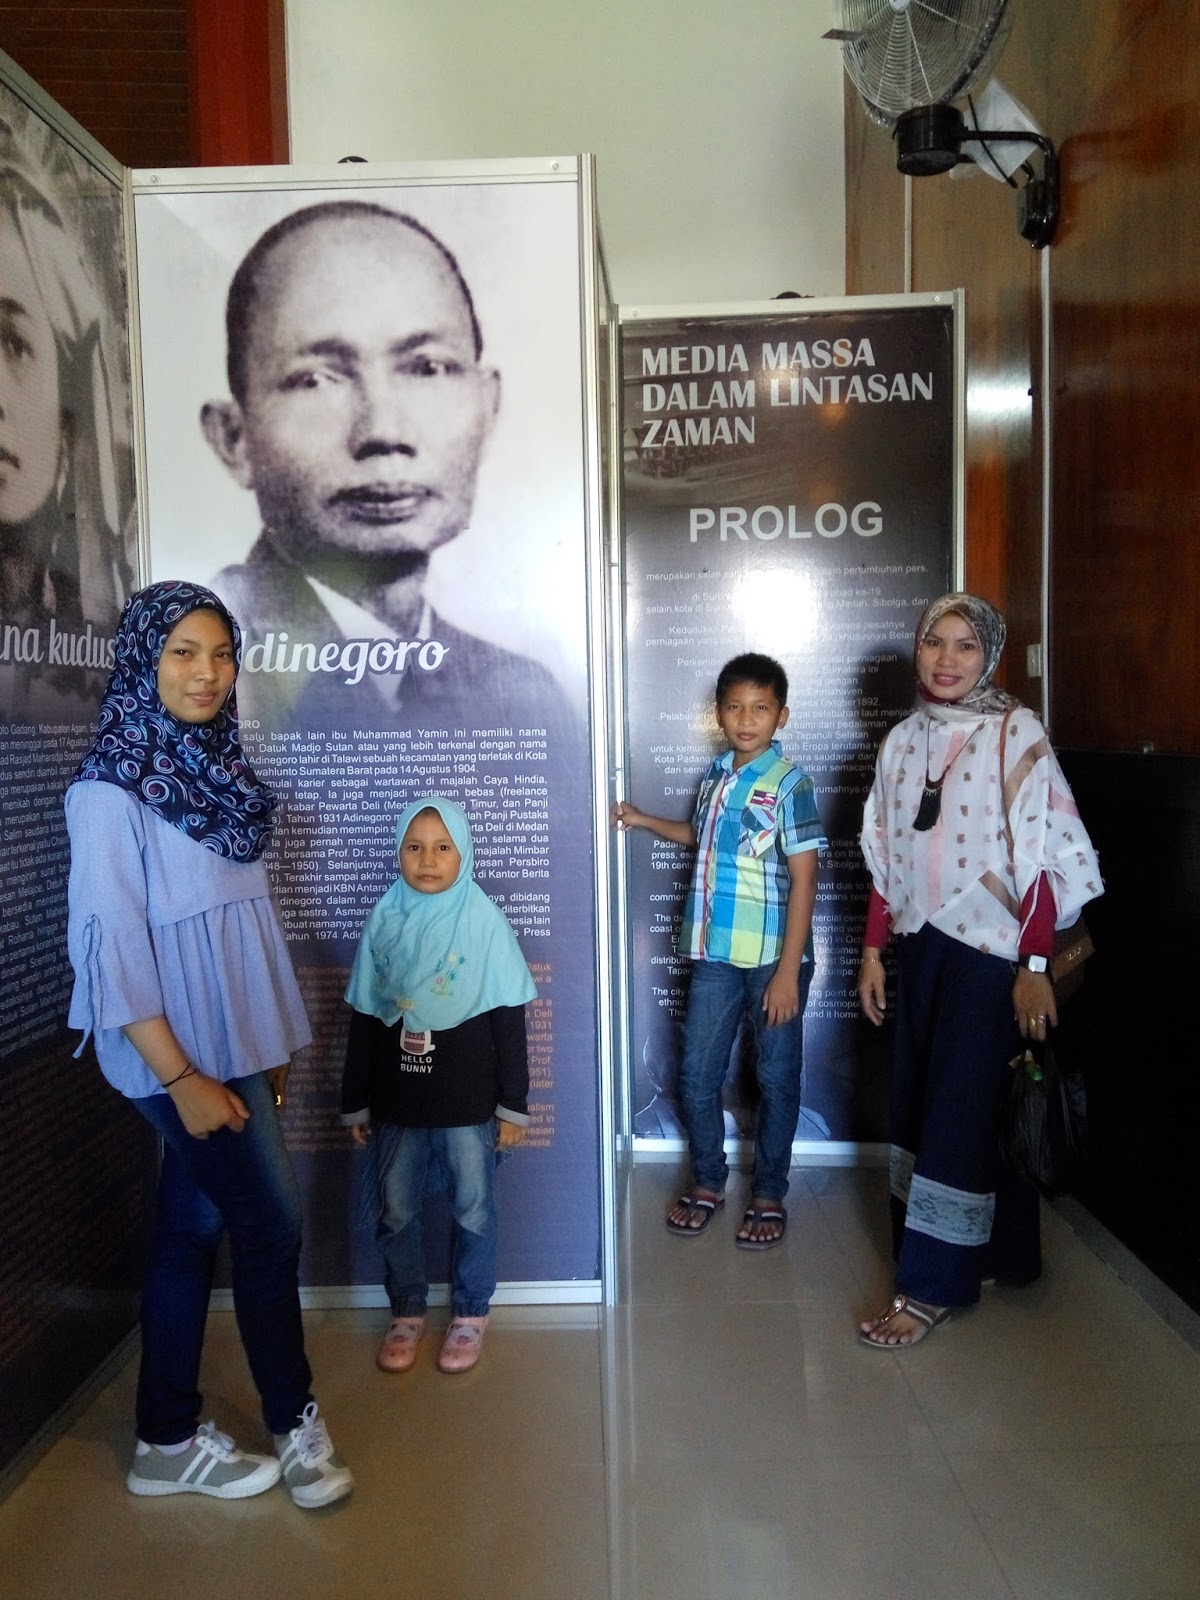 Padang fajarsumbar Pameran tokoh pers nasional berasal dari Minangkabau yang di Museum Adityawarman diminati wisatawan Pameran tersebut juga dalam